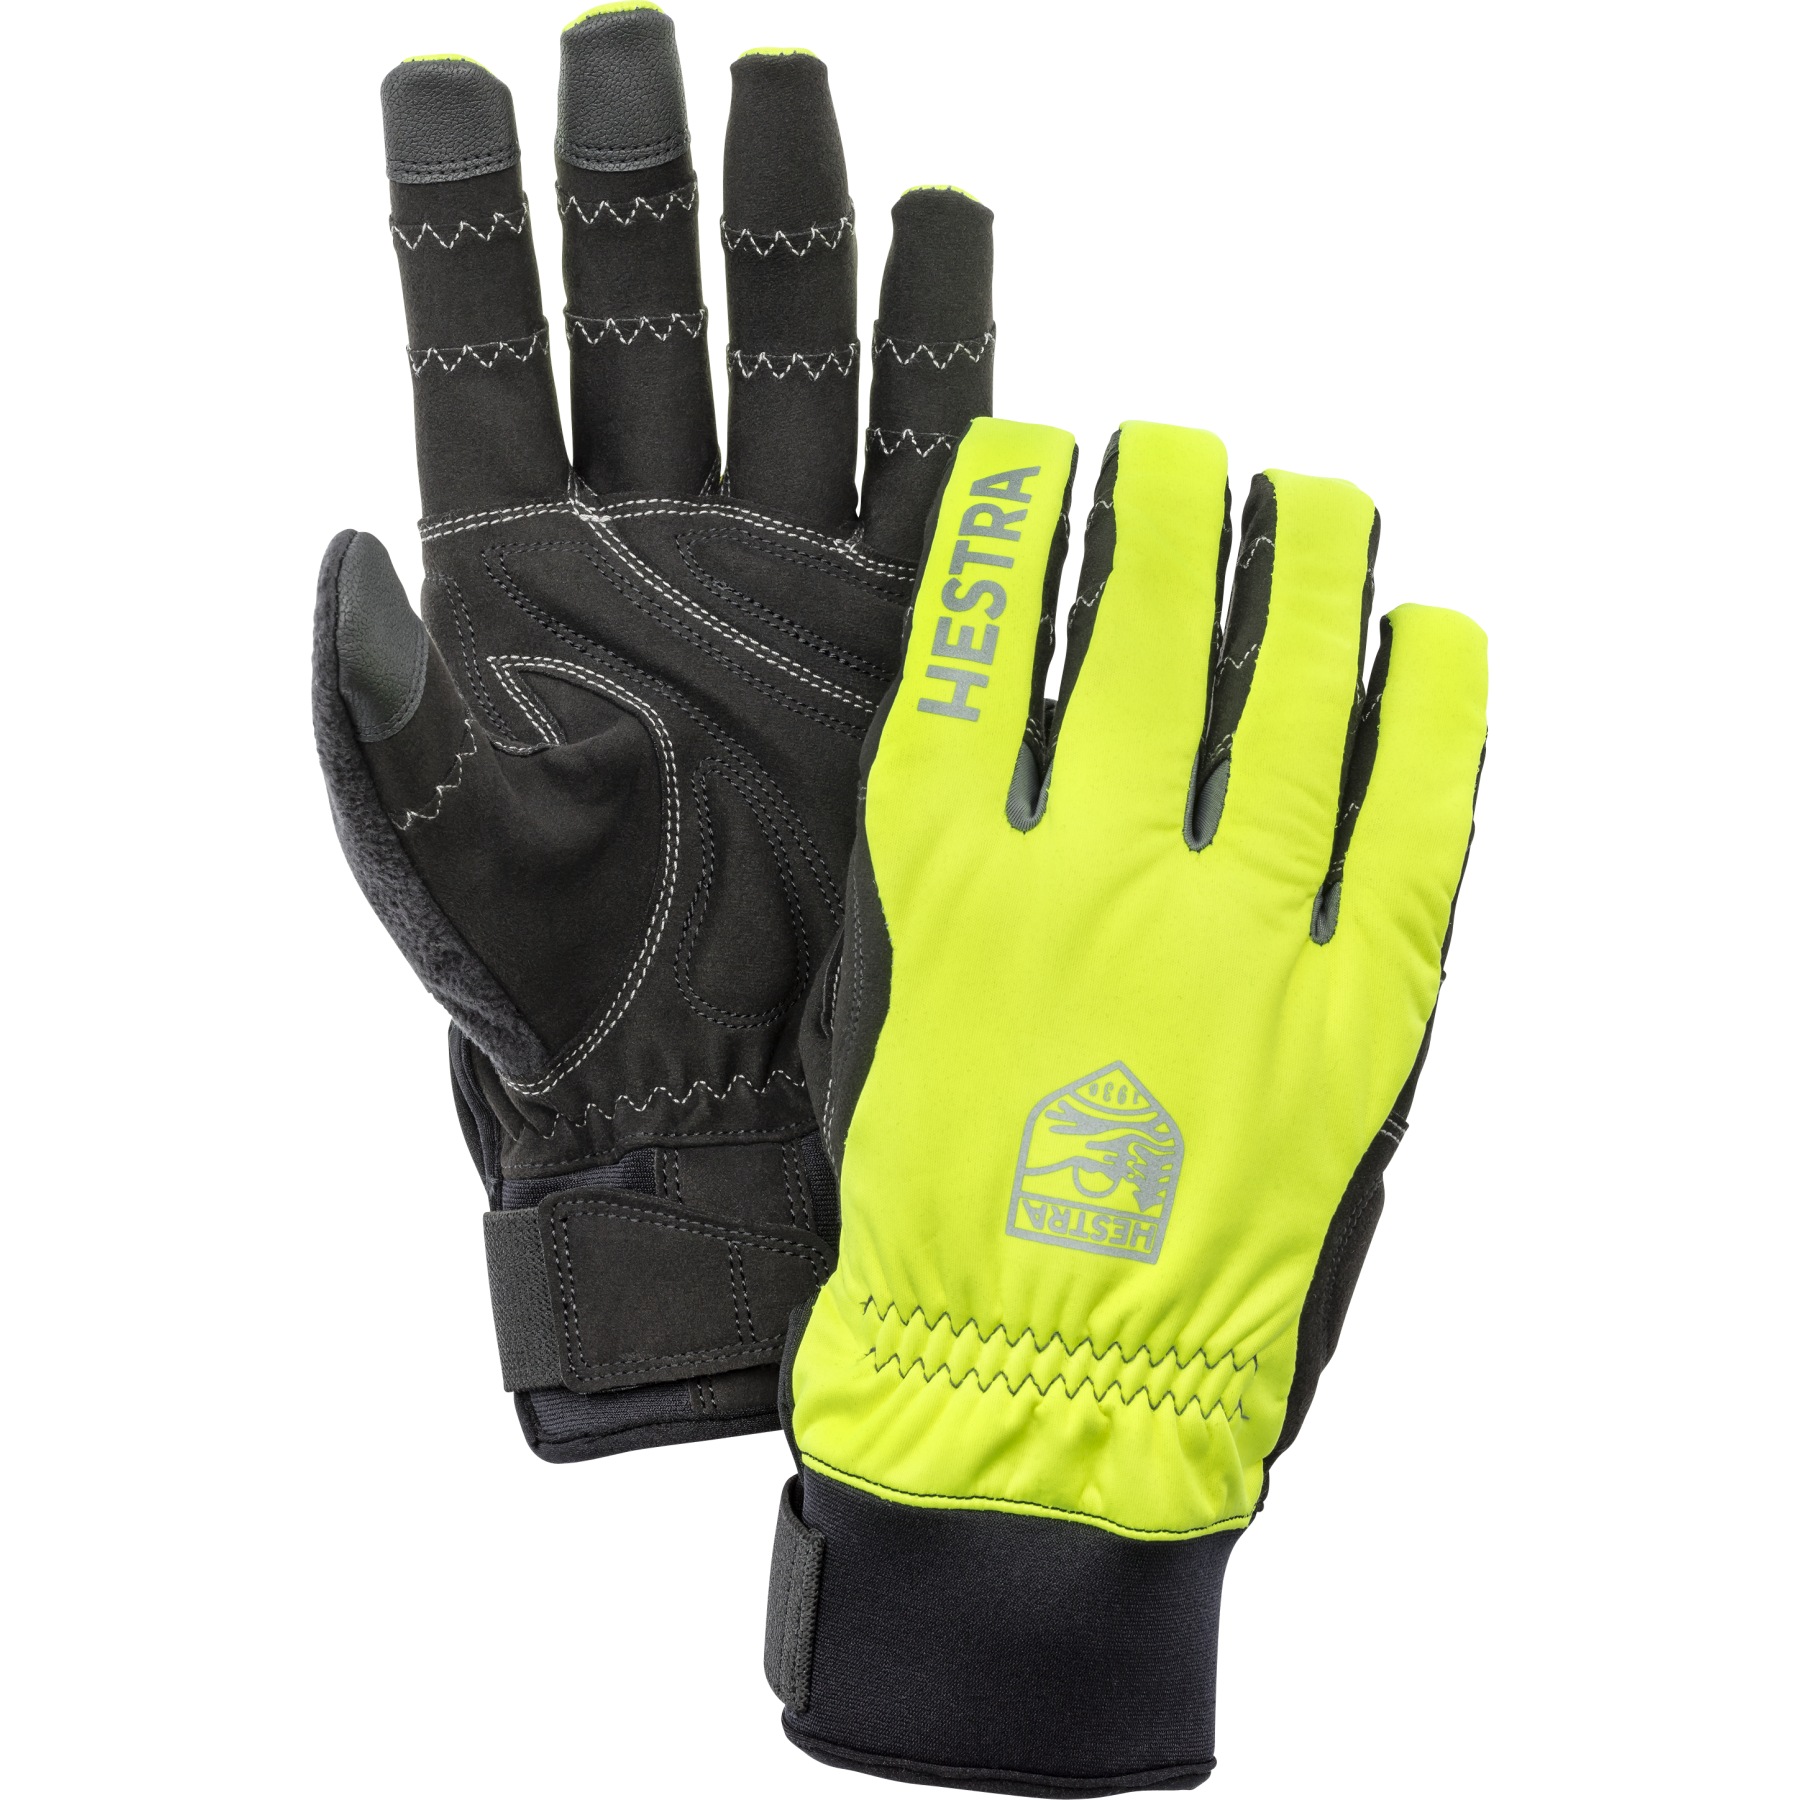 Picture of Hestra Ergo Grip Long - 5 Finger Bike Gloves - yellow / black